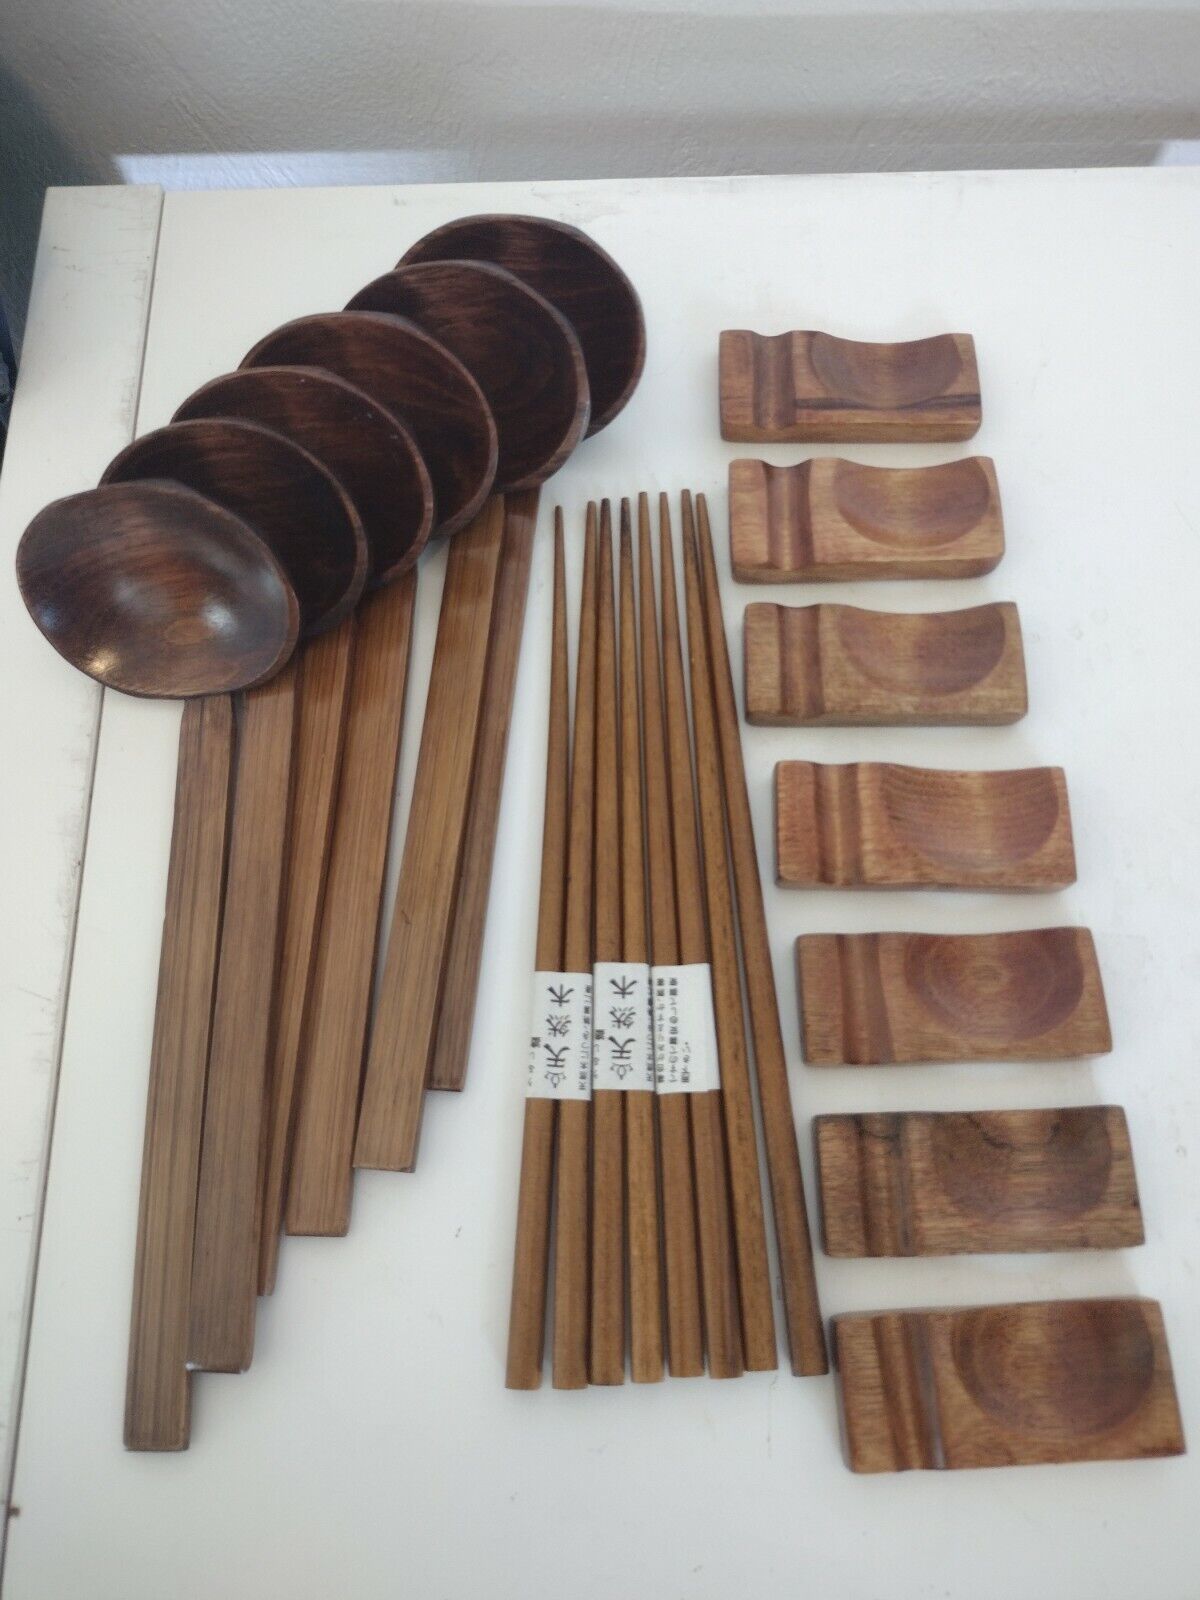 Asian Wooden Utensils Chop Sticks Settings & Servers